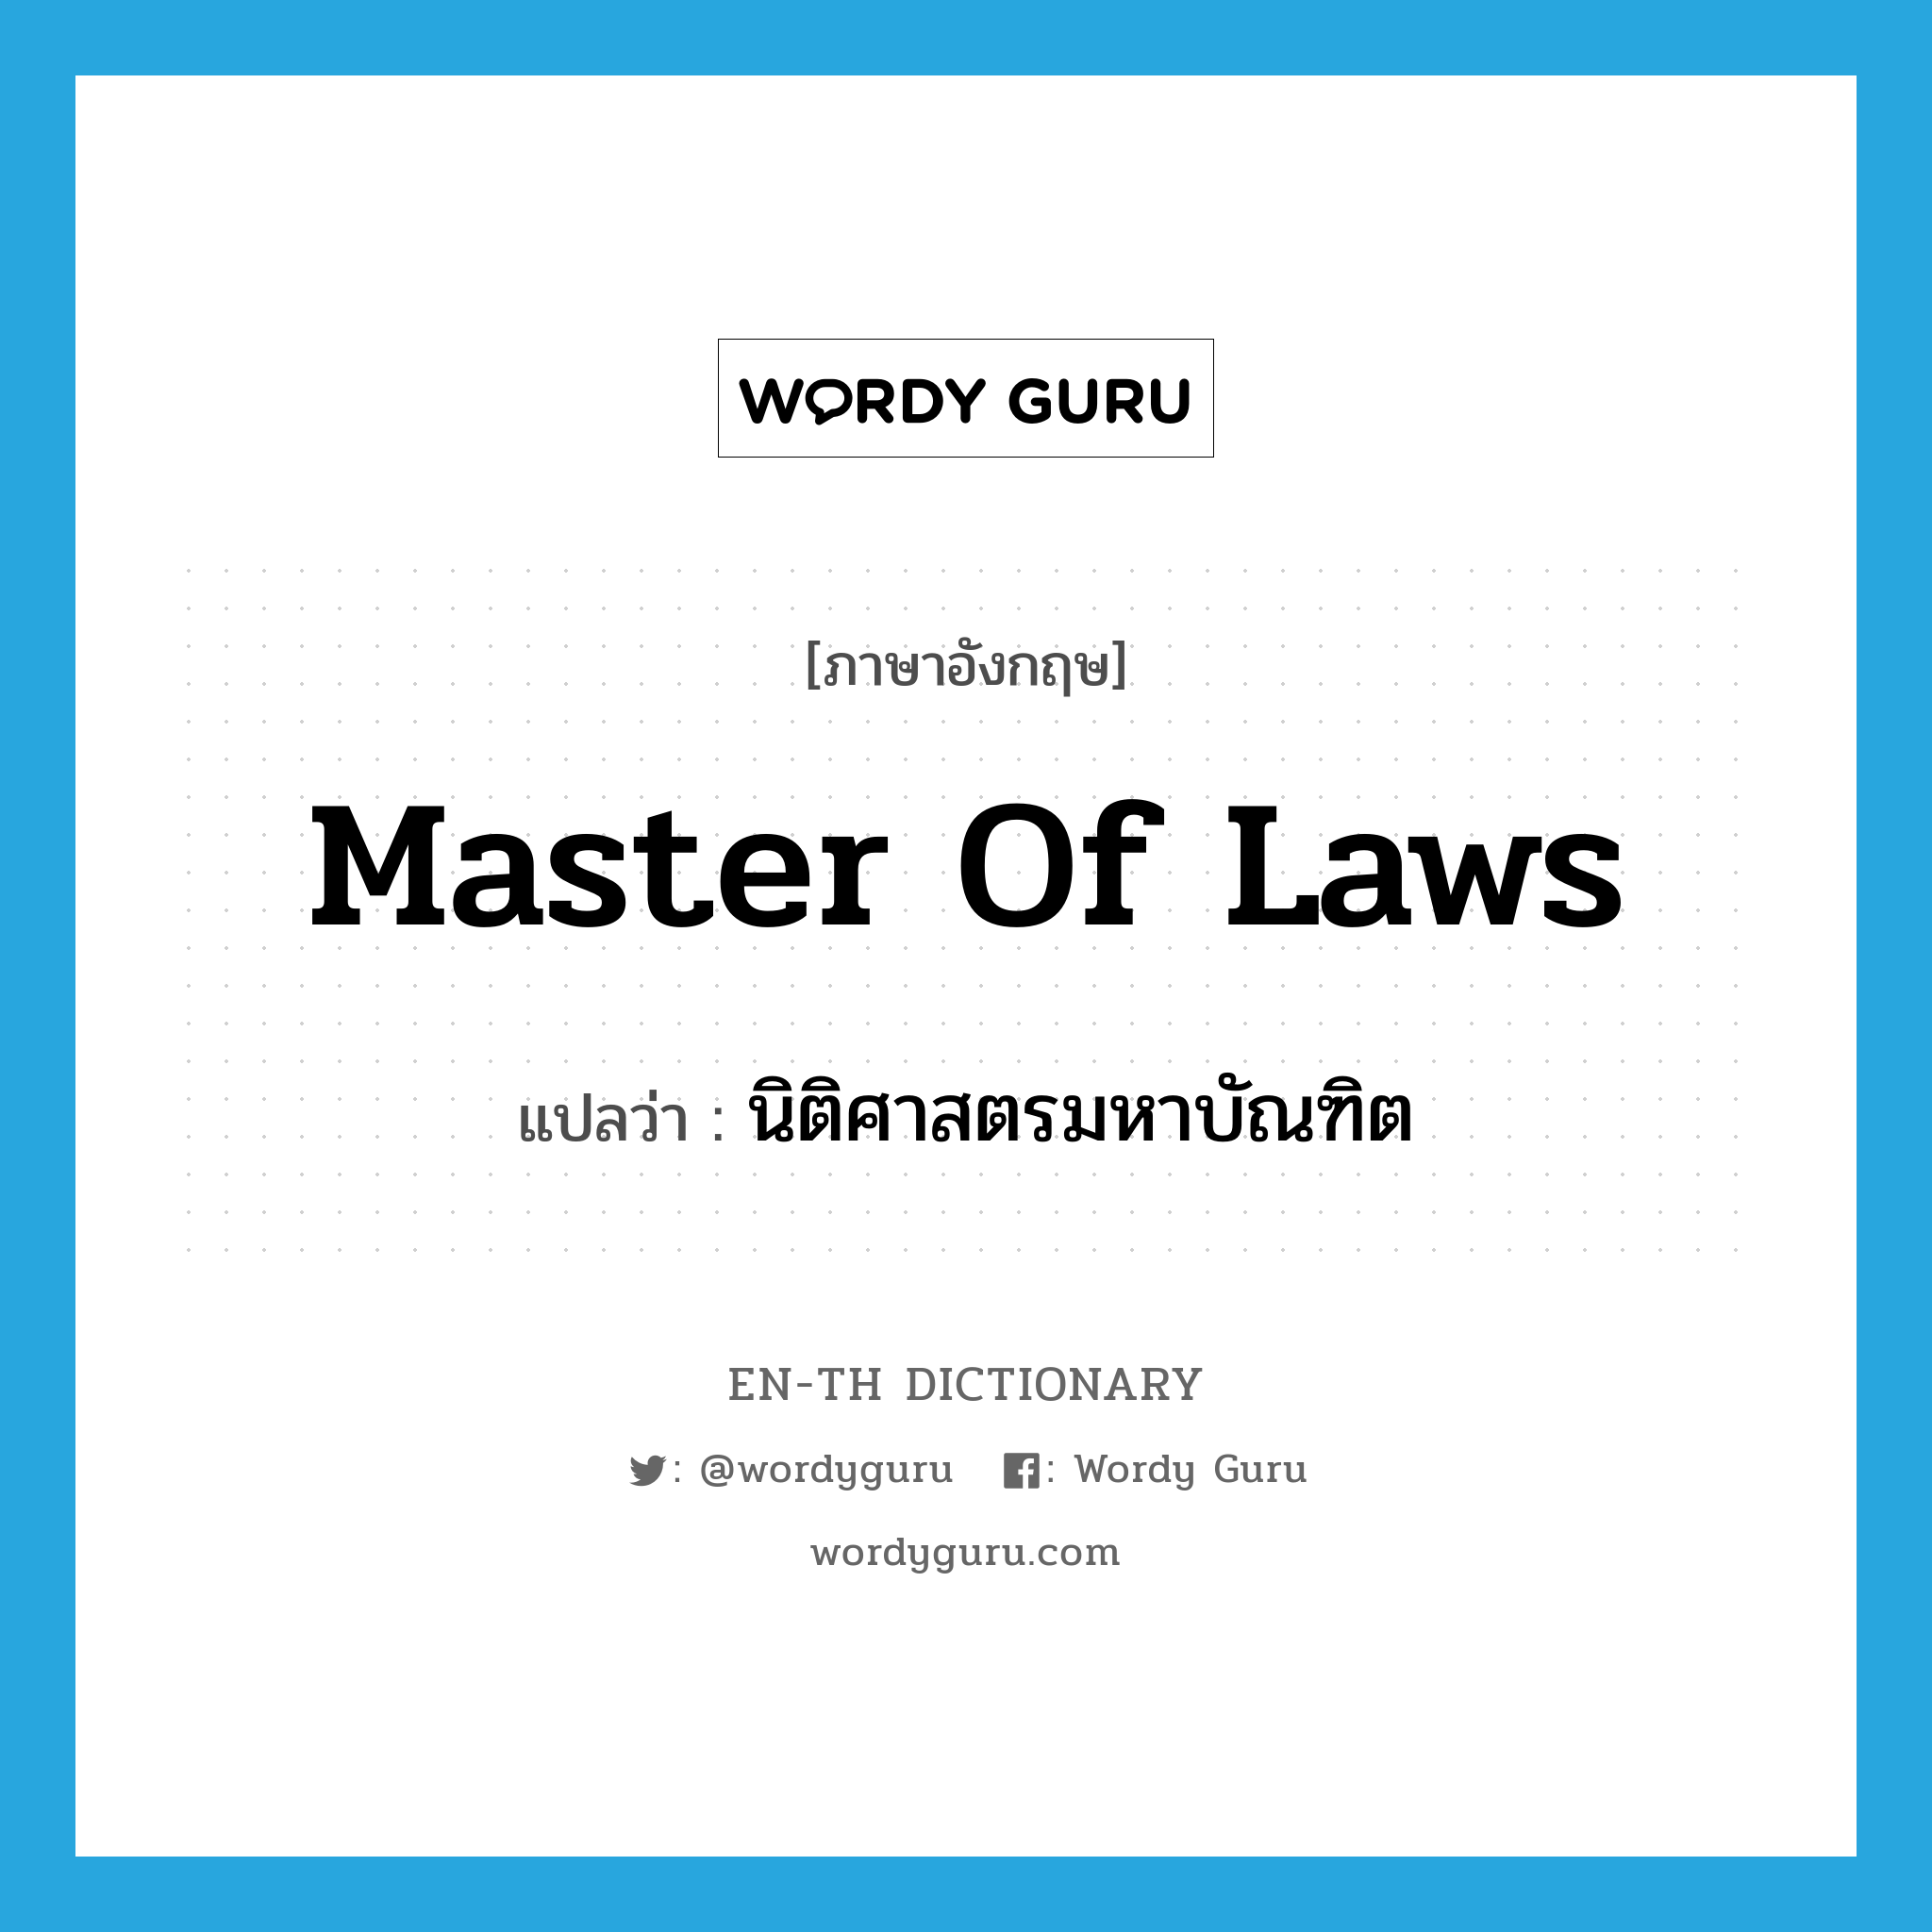 Master of Laws แปลว่า?, คำศัพท์ภาษาอังกฤษ Master of Laws แปลว่า นิติศาสตรมหาบัณฑิต ประเภท N หมวด N